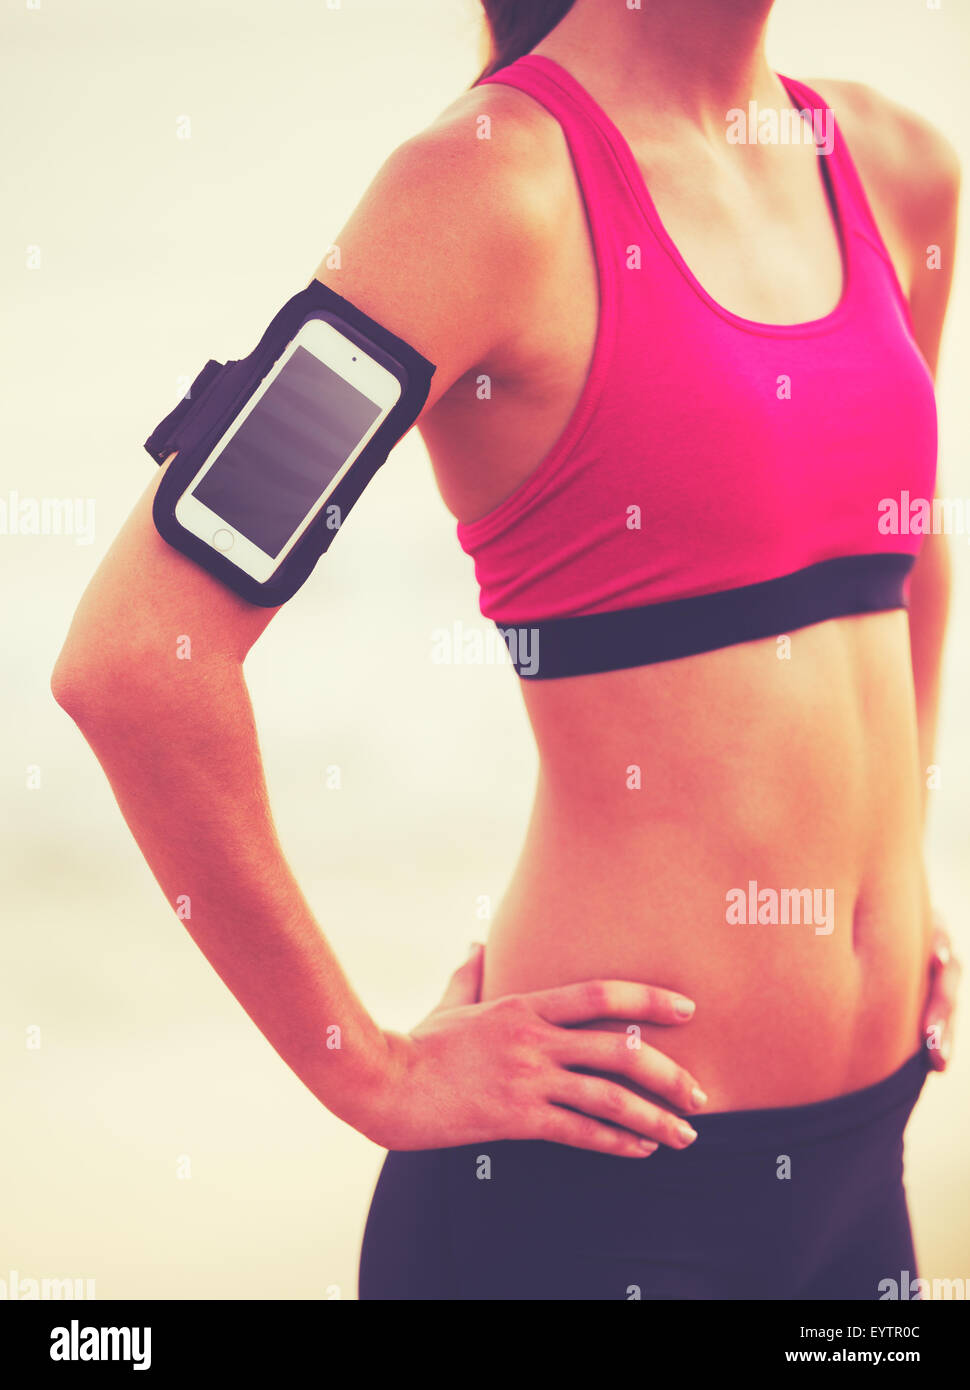 Active Healthy Lifestyle sports avec la technologie moderne. Jeune femme fitness attrayant avec smart phone prêt pour l'entraînement. Banque D'Images